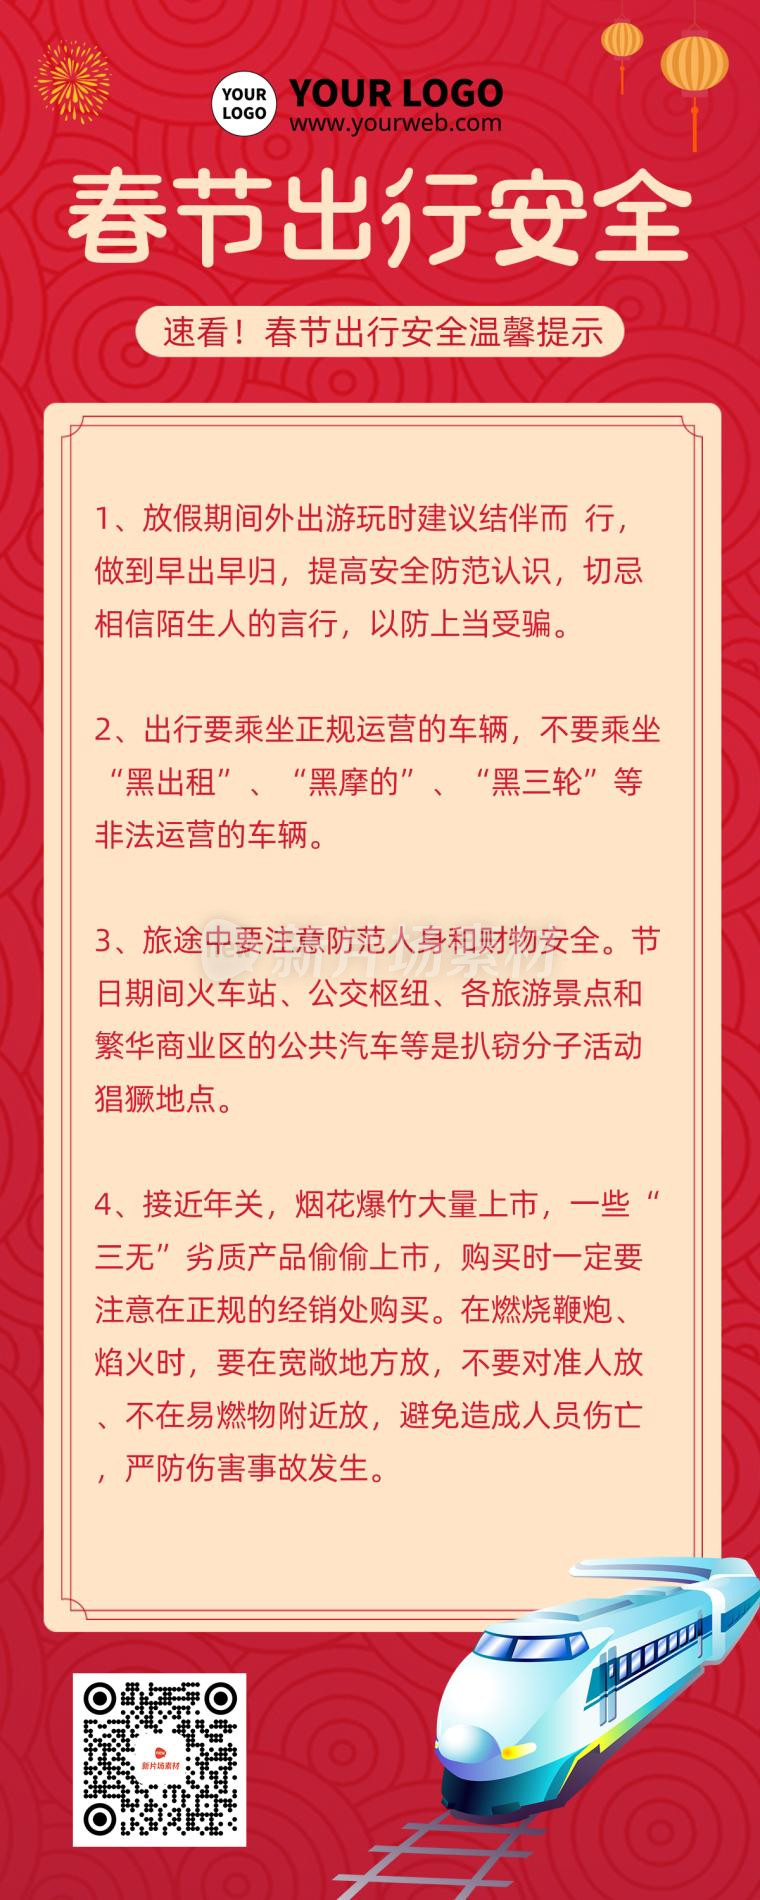 春节出行安全时尚红色长图海报